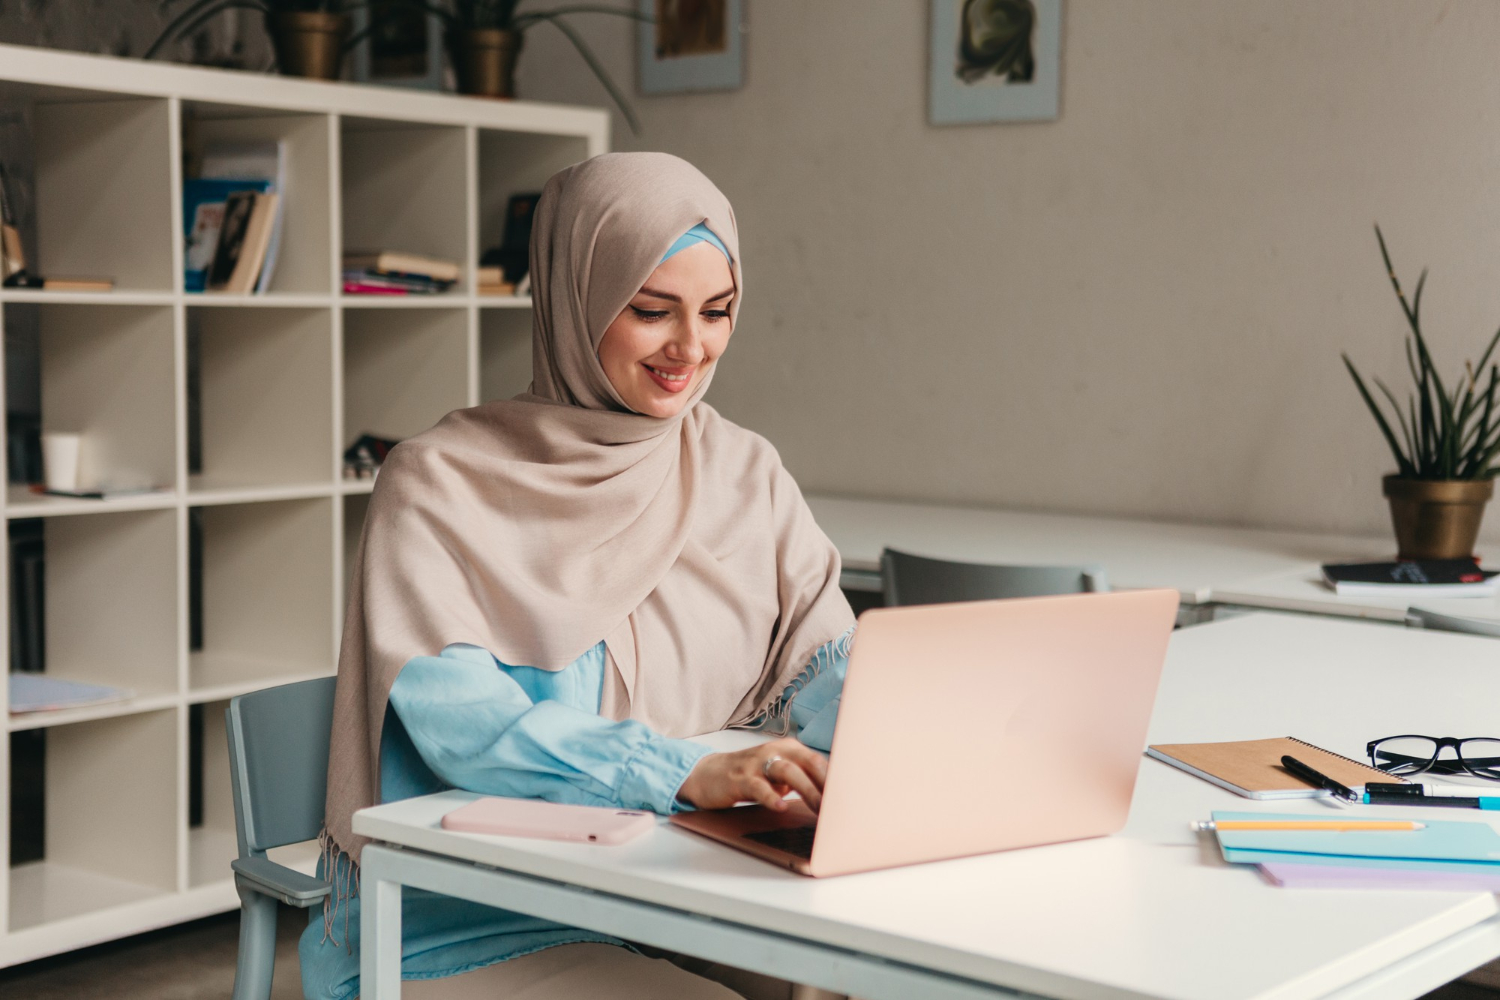 Mulai dari inovasi hingga transformasi digital bisa jadi strategi meningkatkan omzet baju muslim